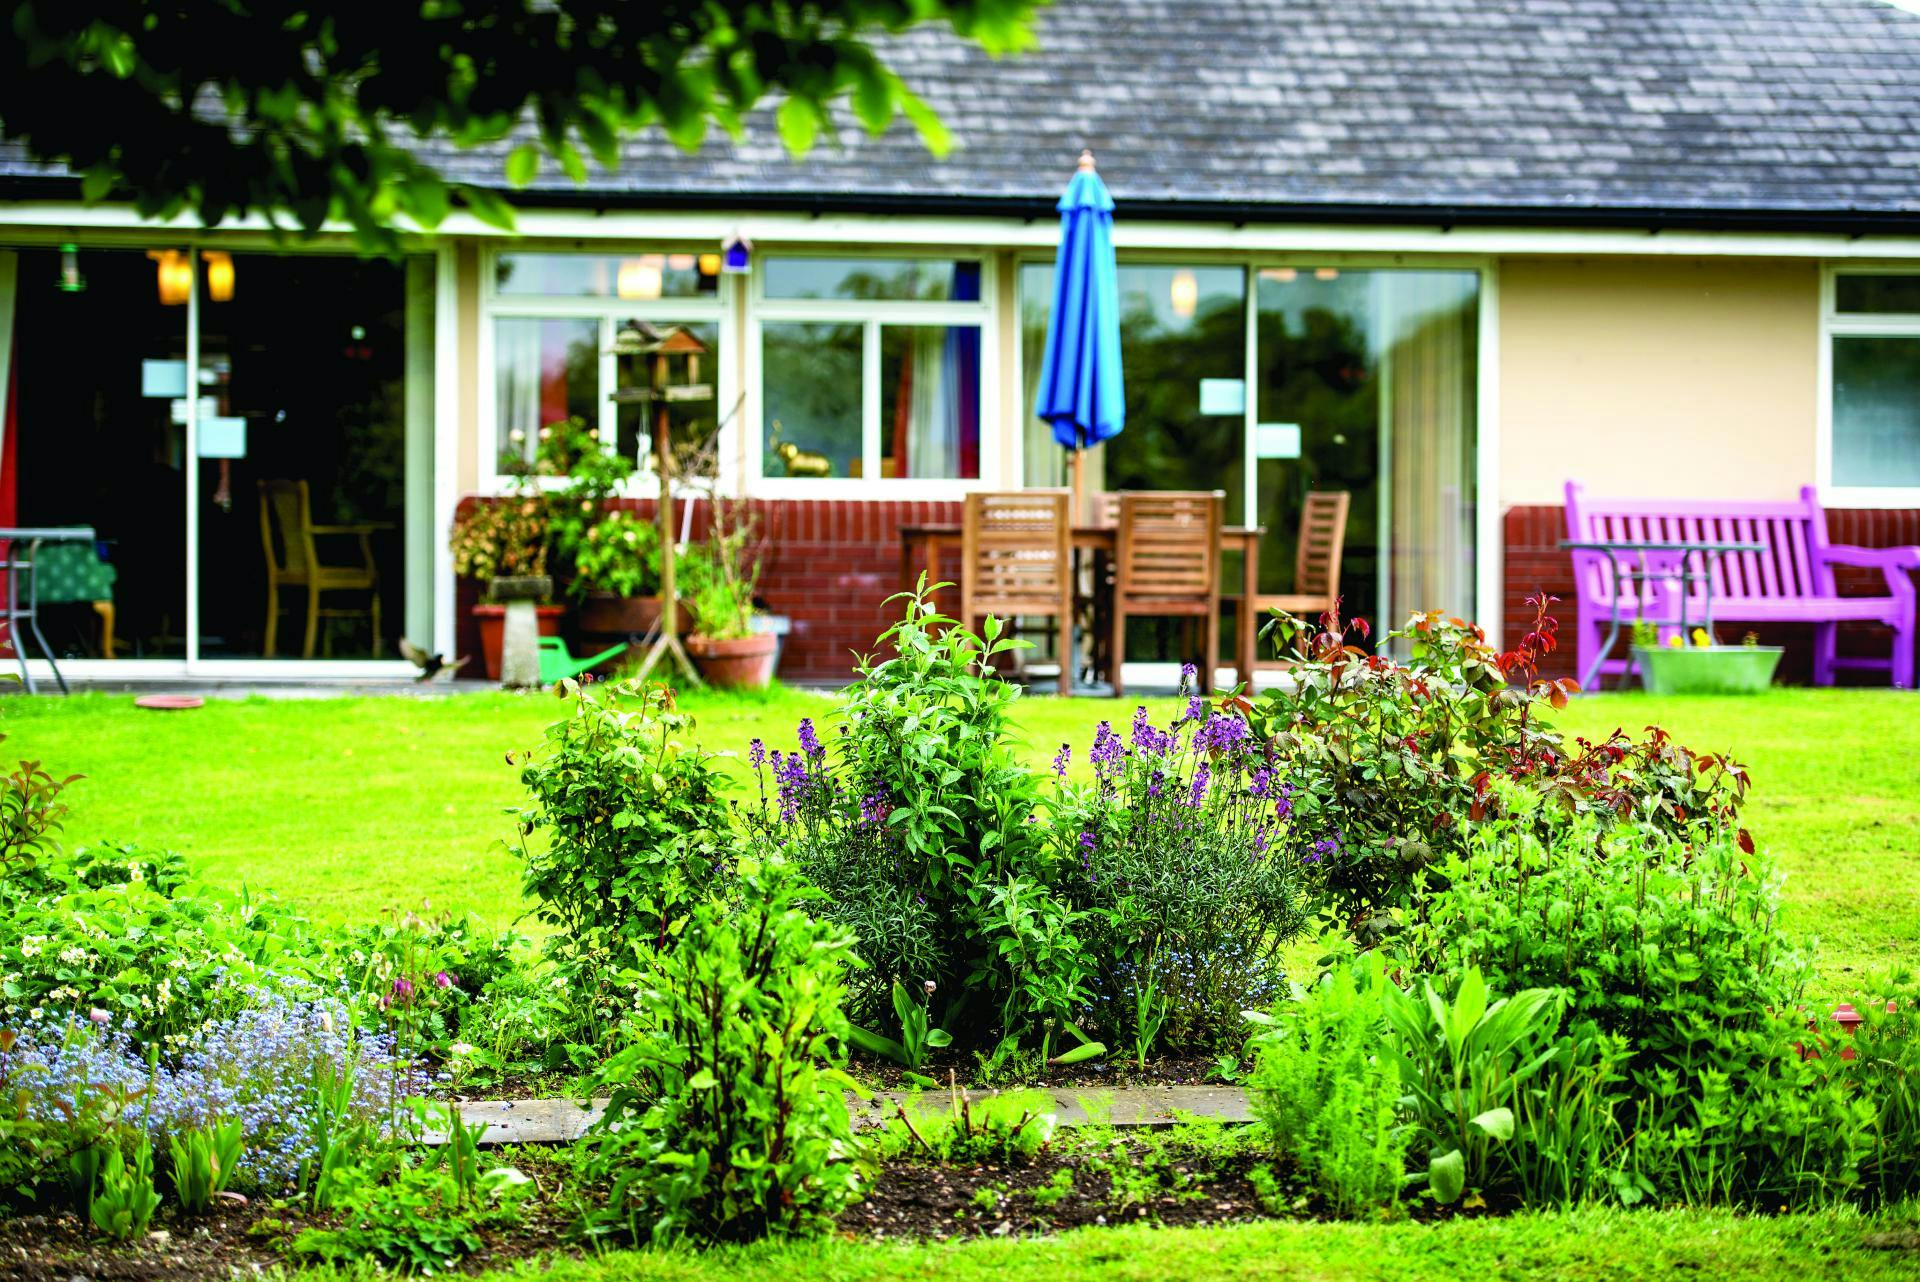 Garden atvBuckland Court Care Home in Amesbury, Wiltshire